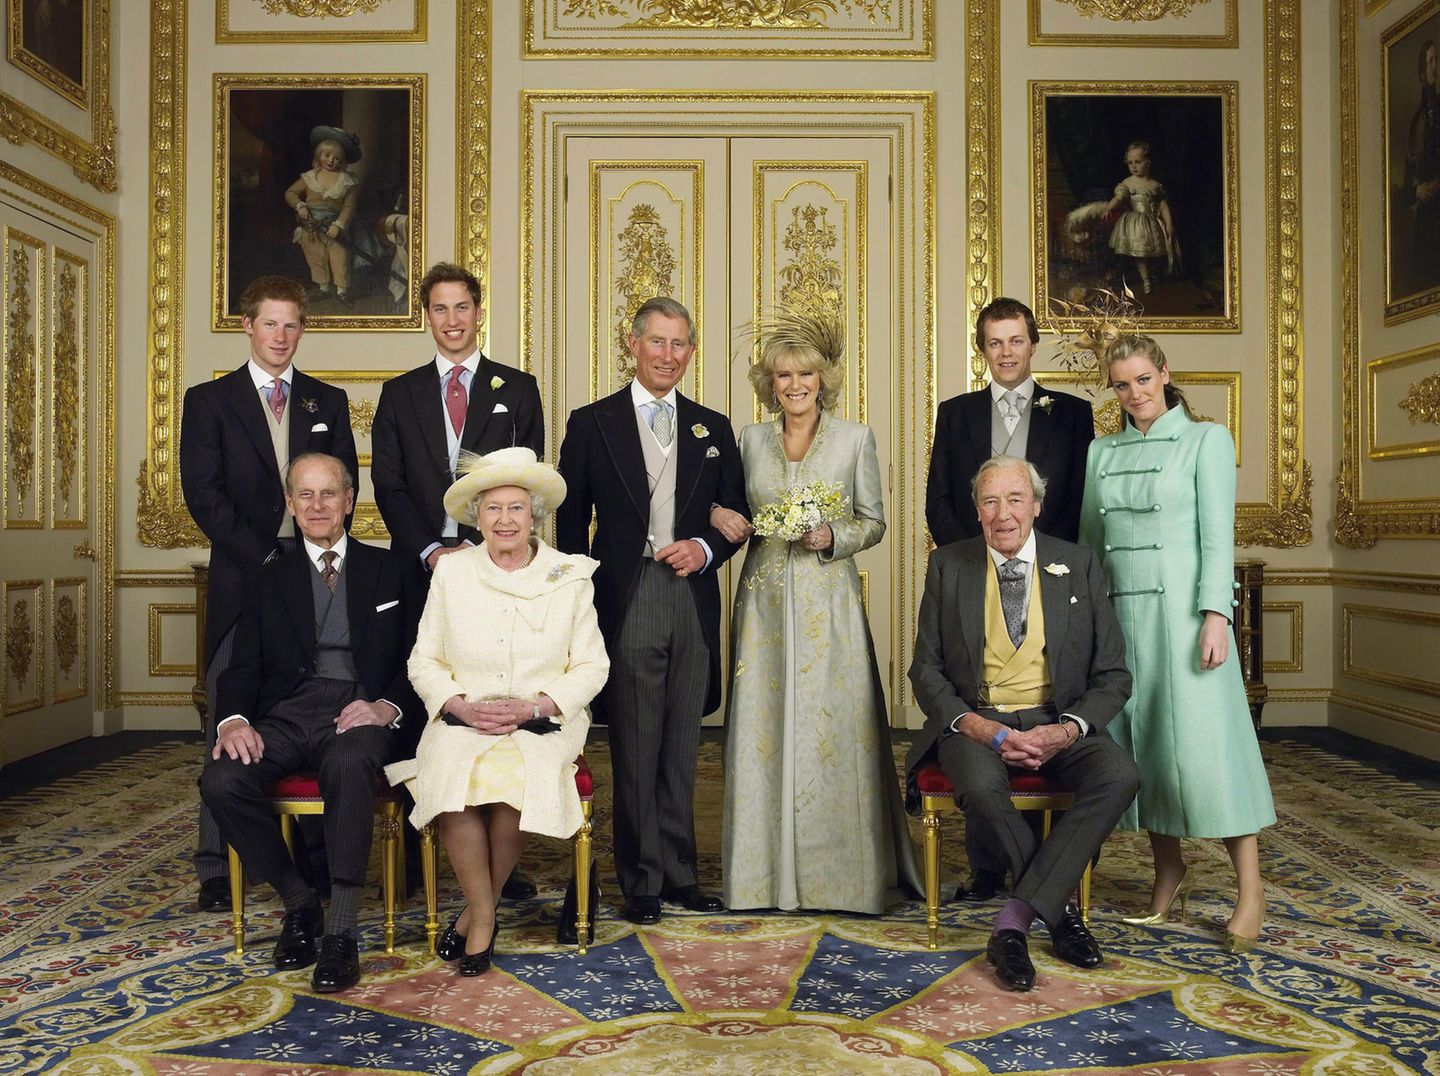 Hochzeitsfoto von Prinz Charles und Herzogin Camilla